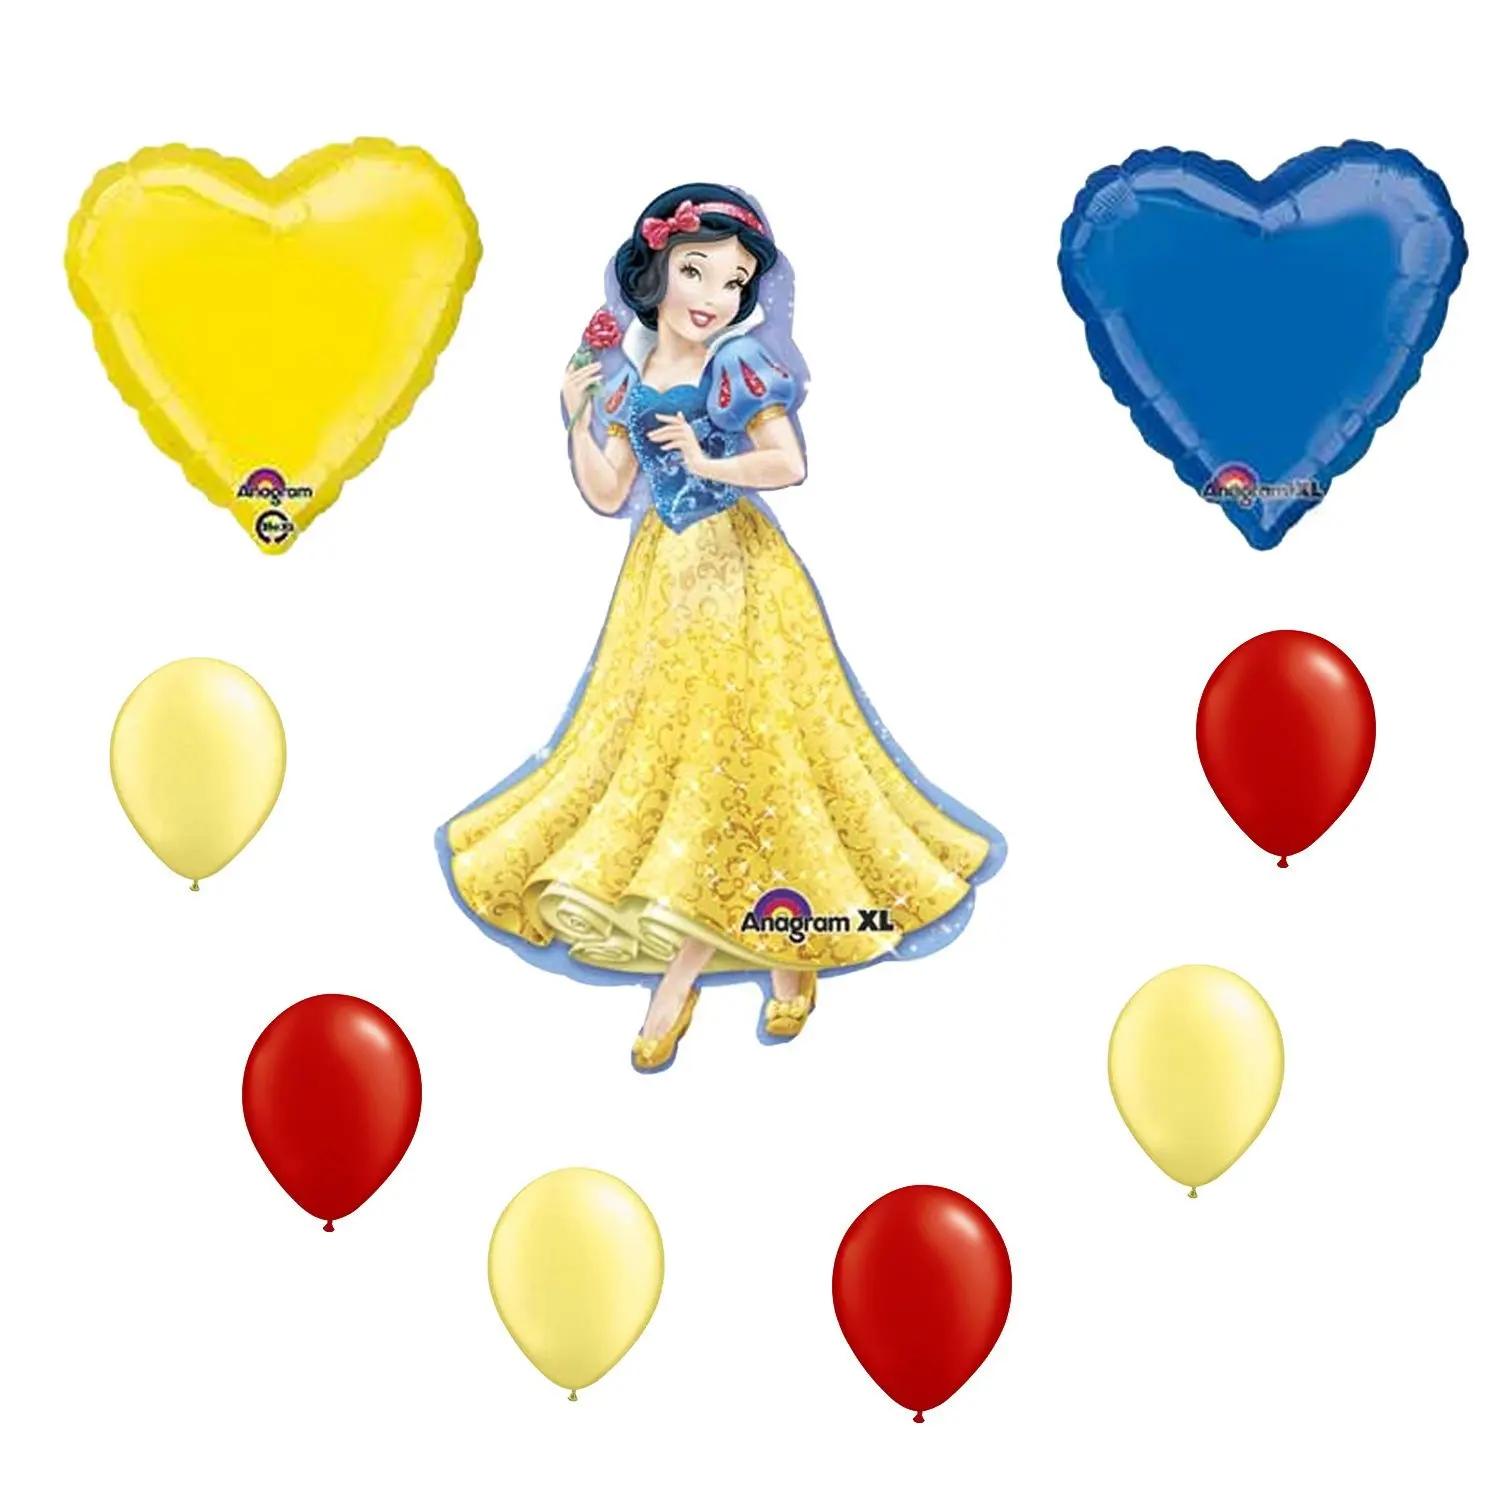 13.99. Disney Princess Snow White Balloon Bouquet. 